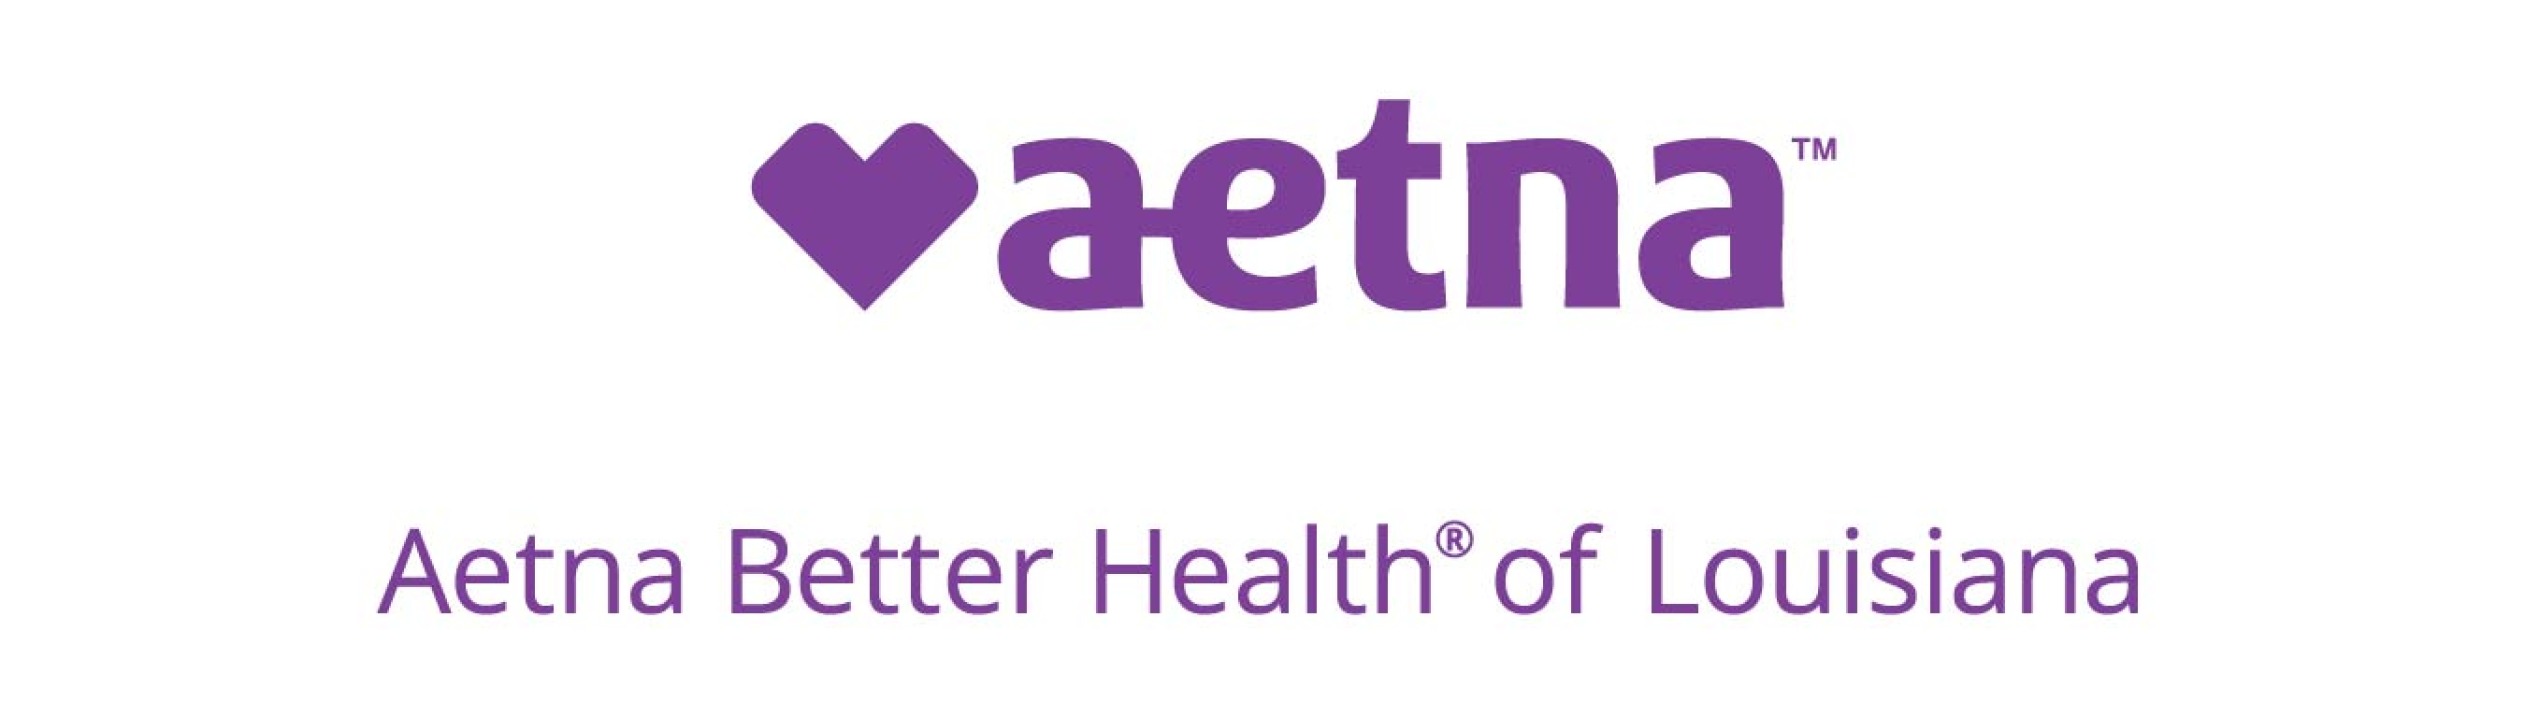 Aetna Better Health of Louisiana logo